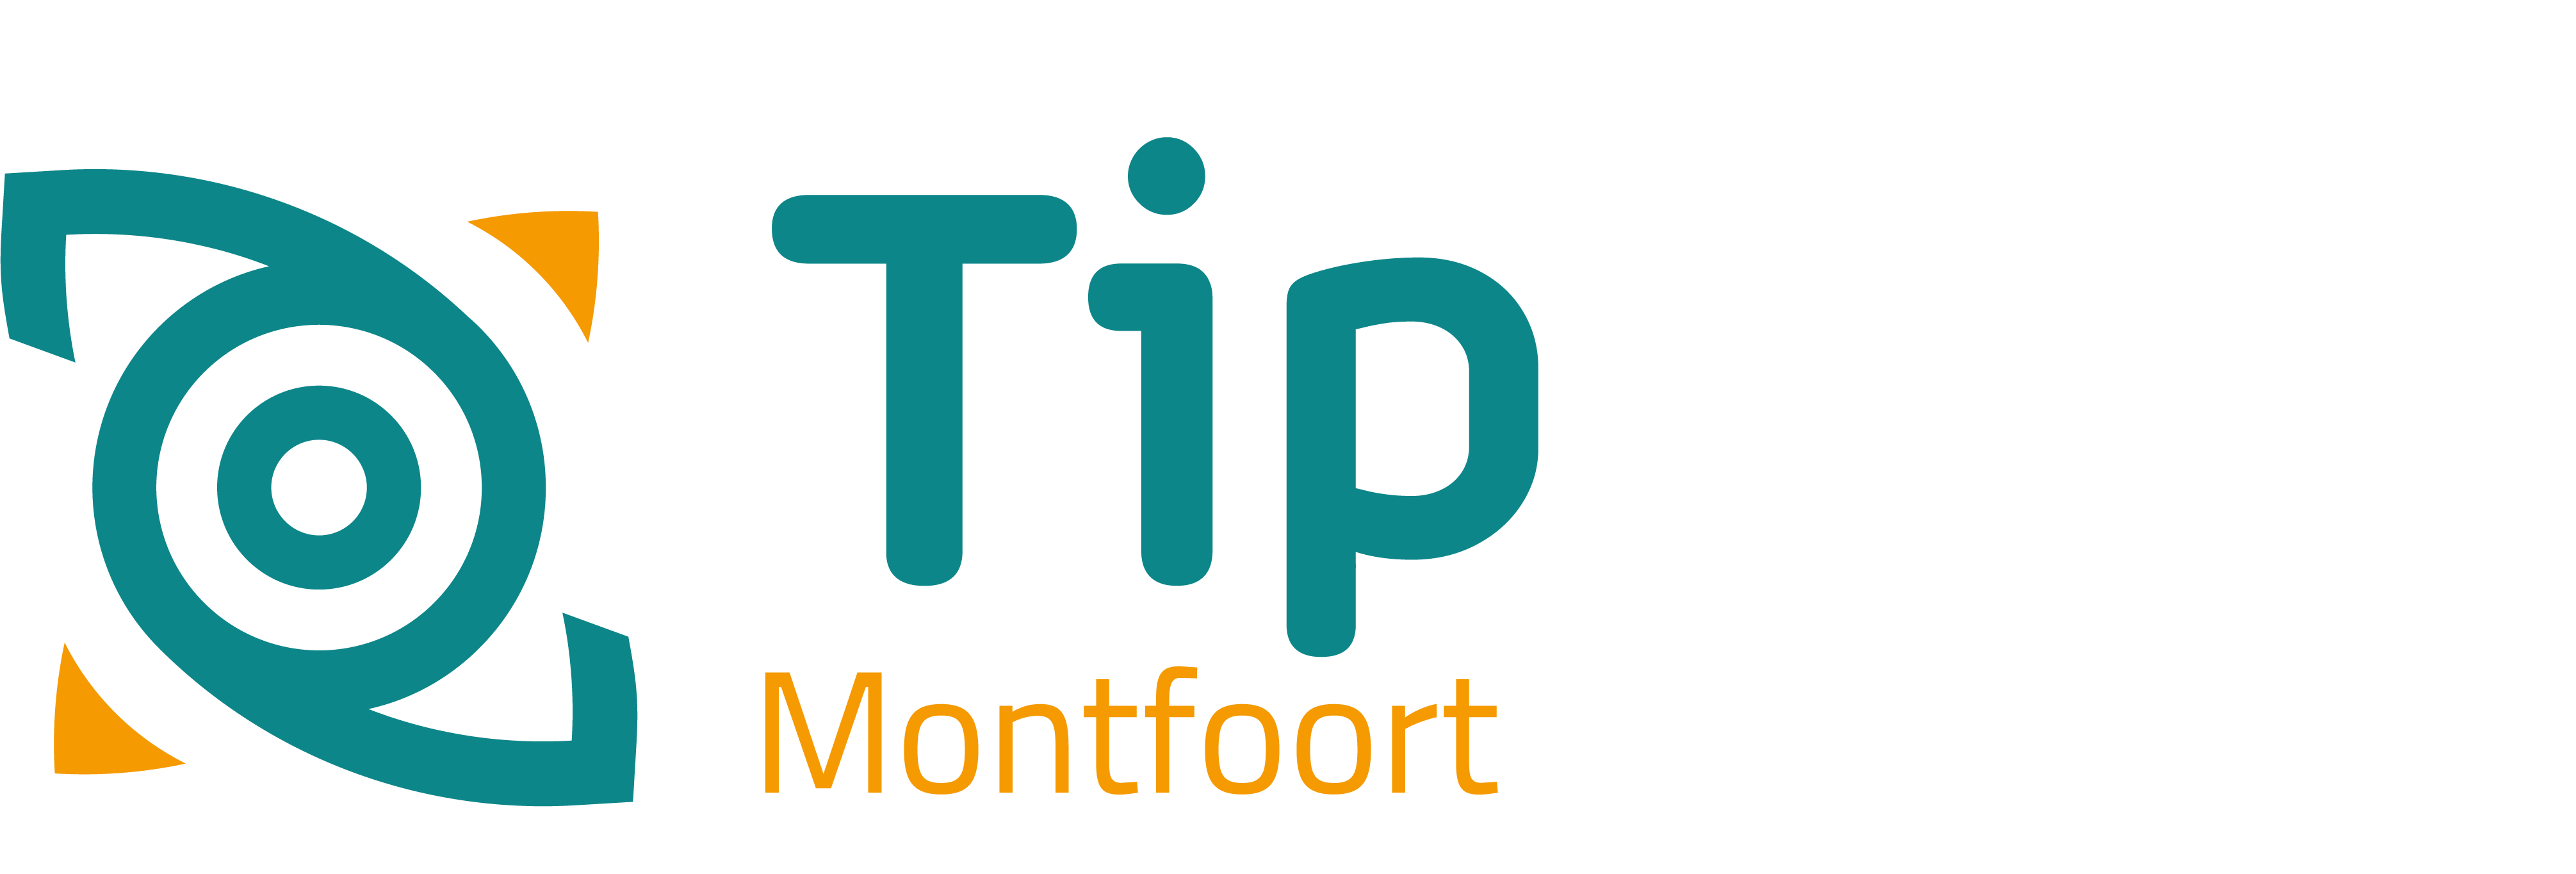 TipMontfoort